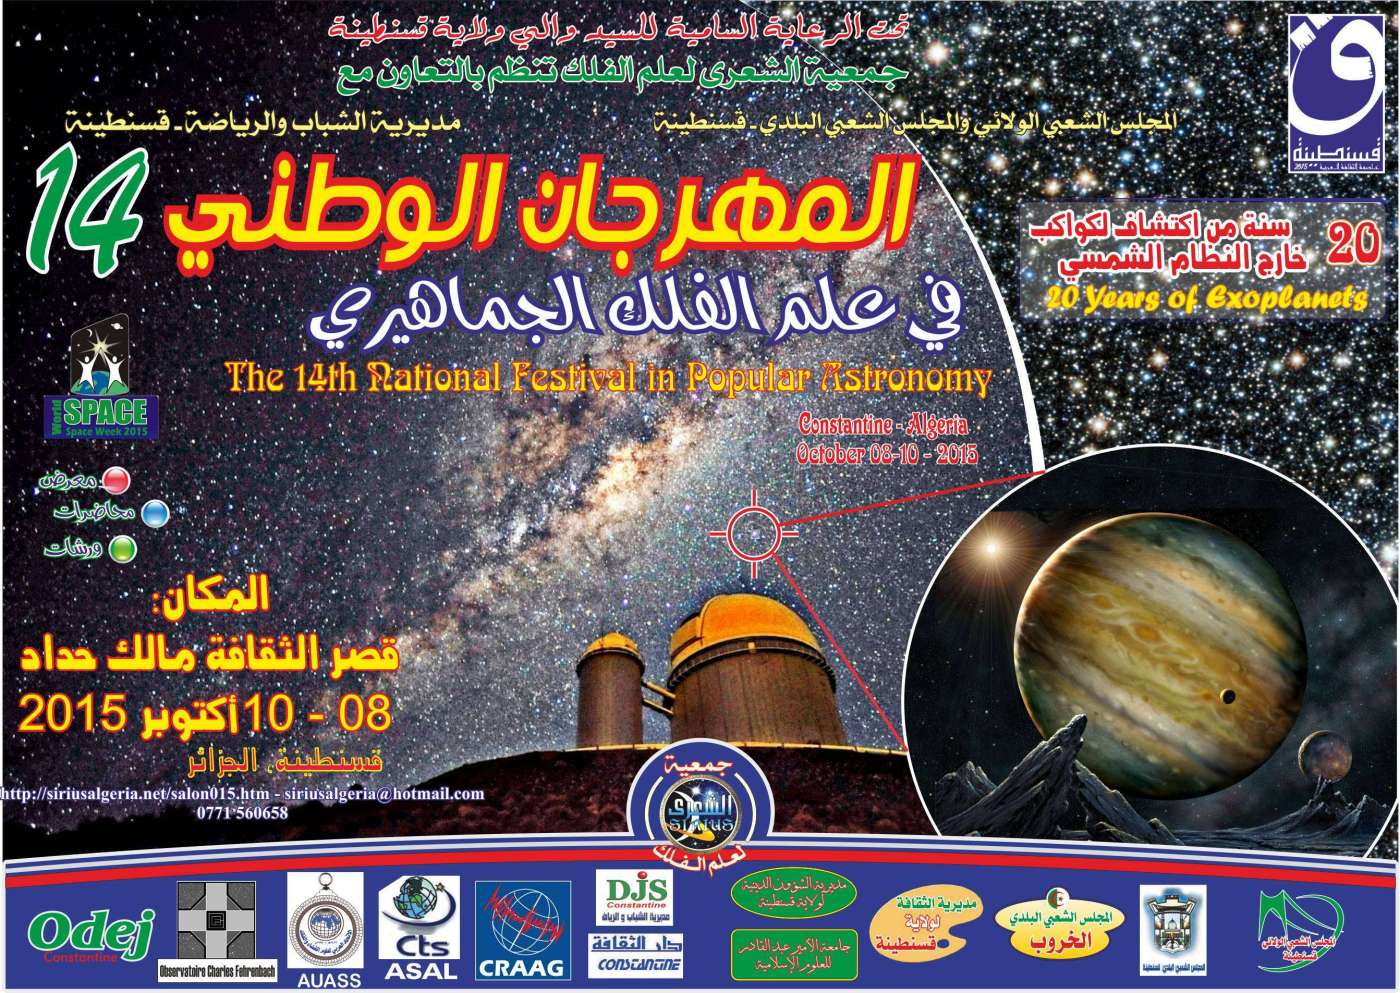 دعوة للمشاركة بالمهرجان الوطني 14 لعلم الفلك الجماهيري 2015 بالجزائر